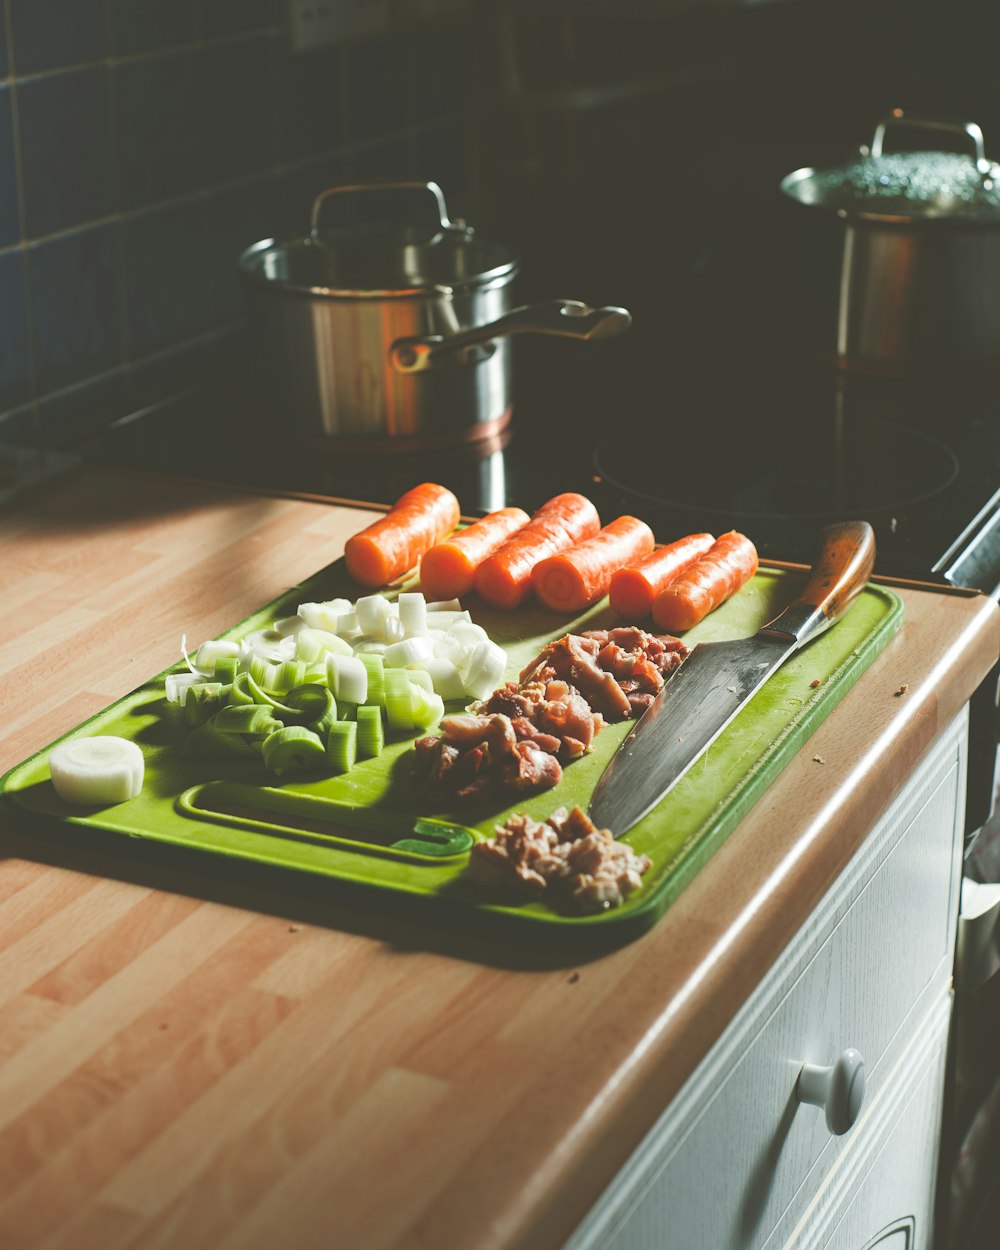 녹색 세라믹 접시에 얇게 썬 토마토와 녹색 야채